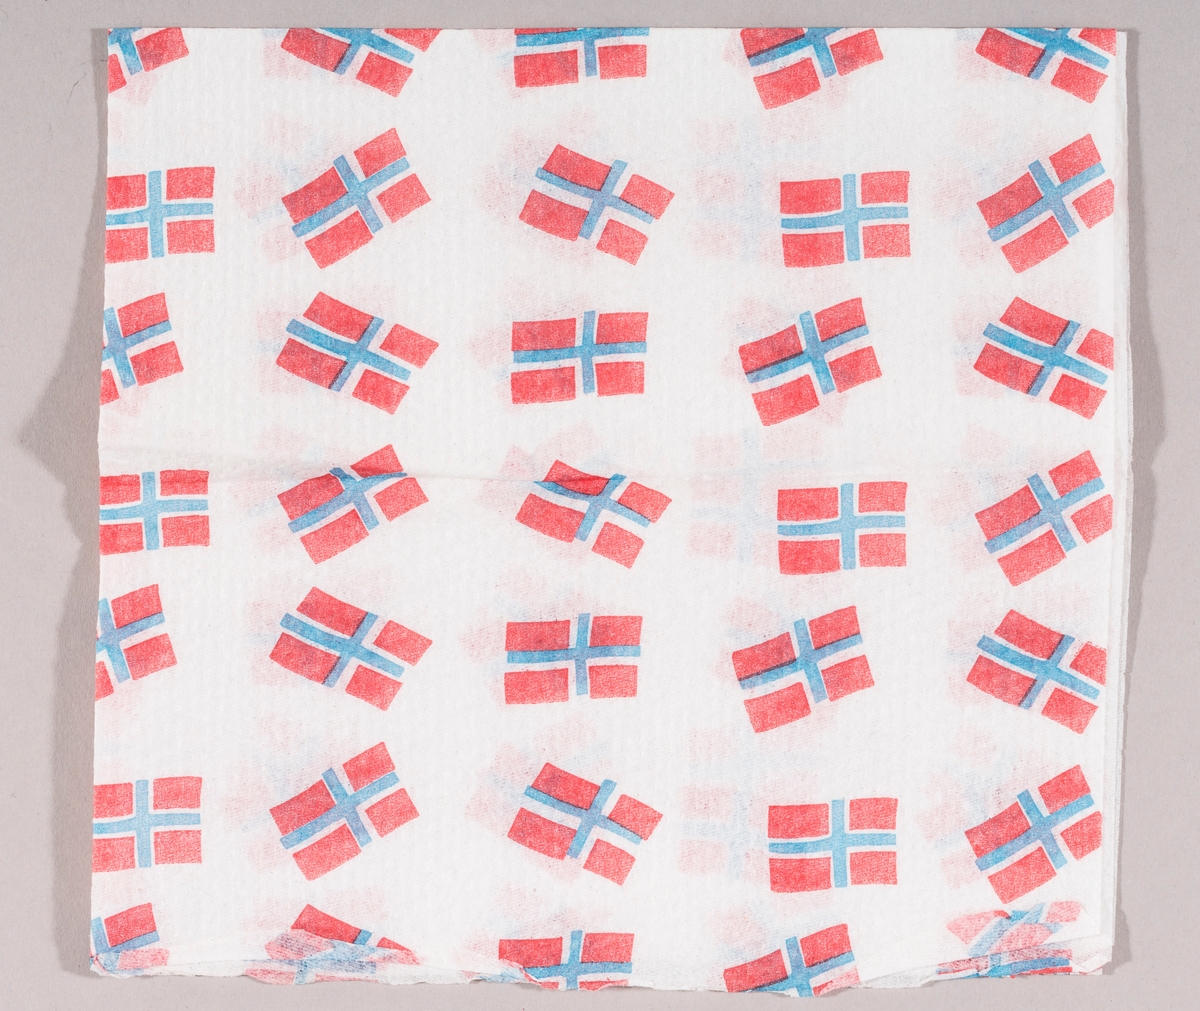 Mange norske flagg